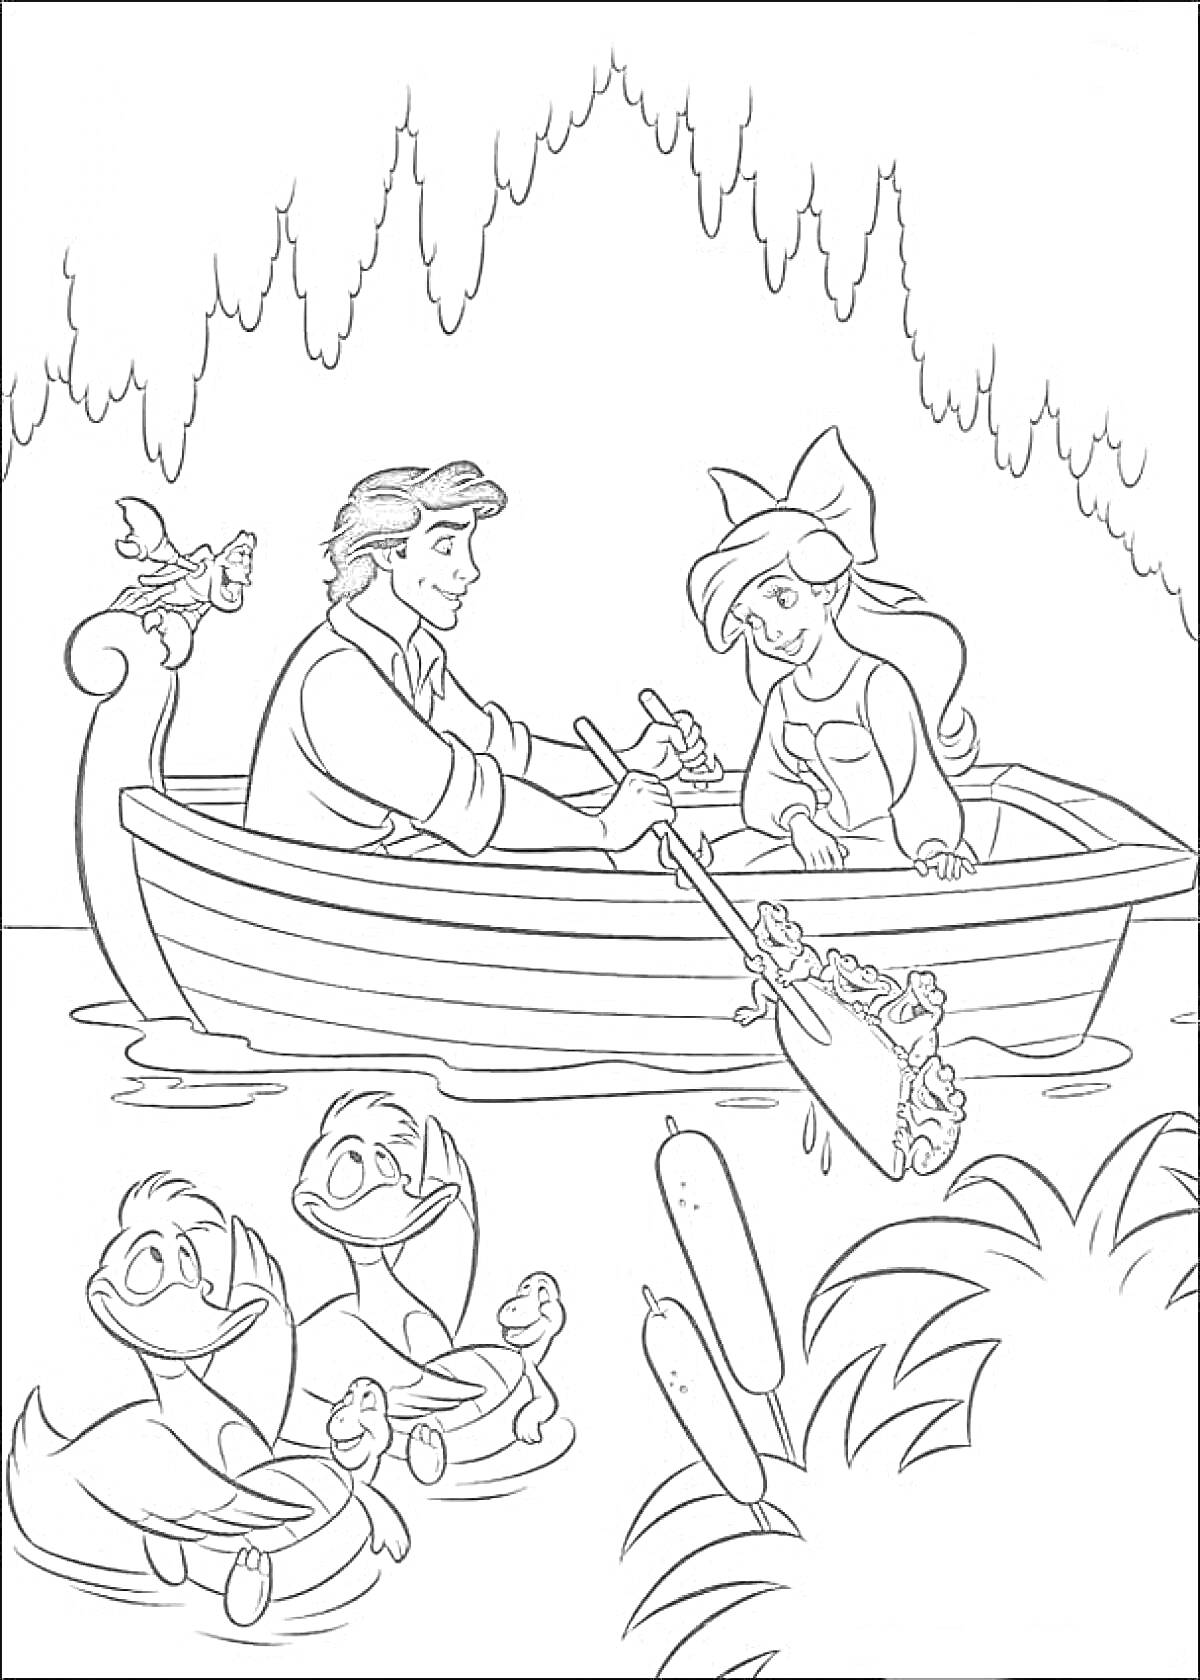 Раскраска Ариэль и принц Эрик в лодке с птицей и утками, плавающими рядом с камышами